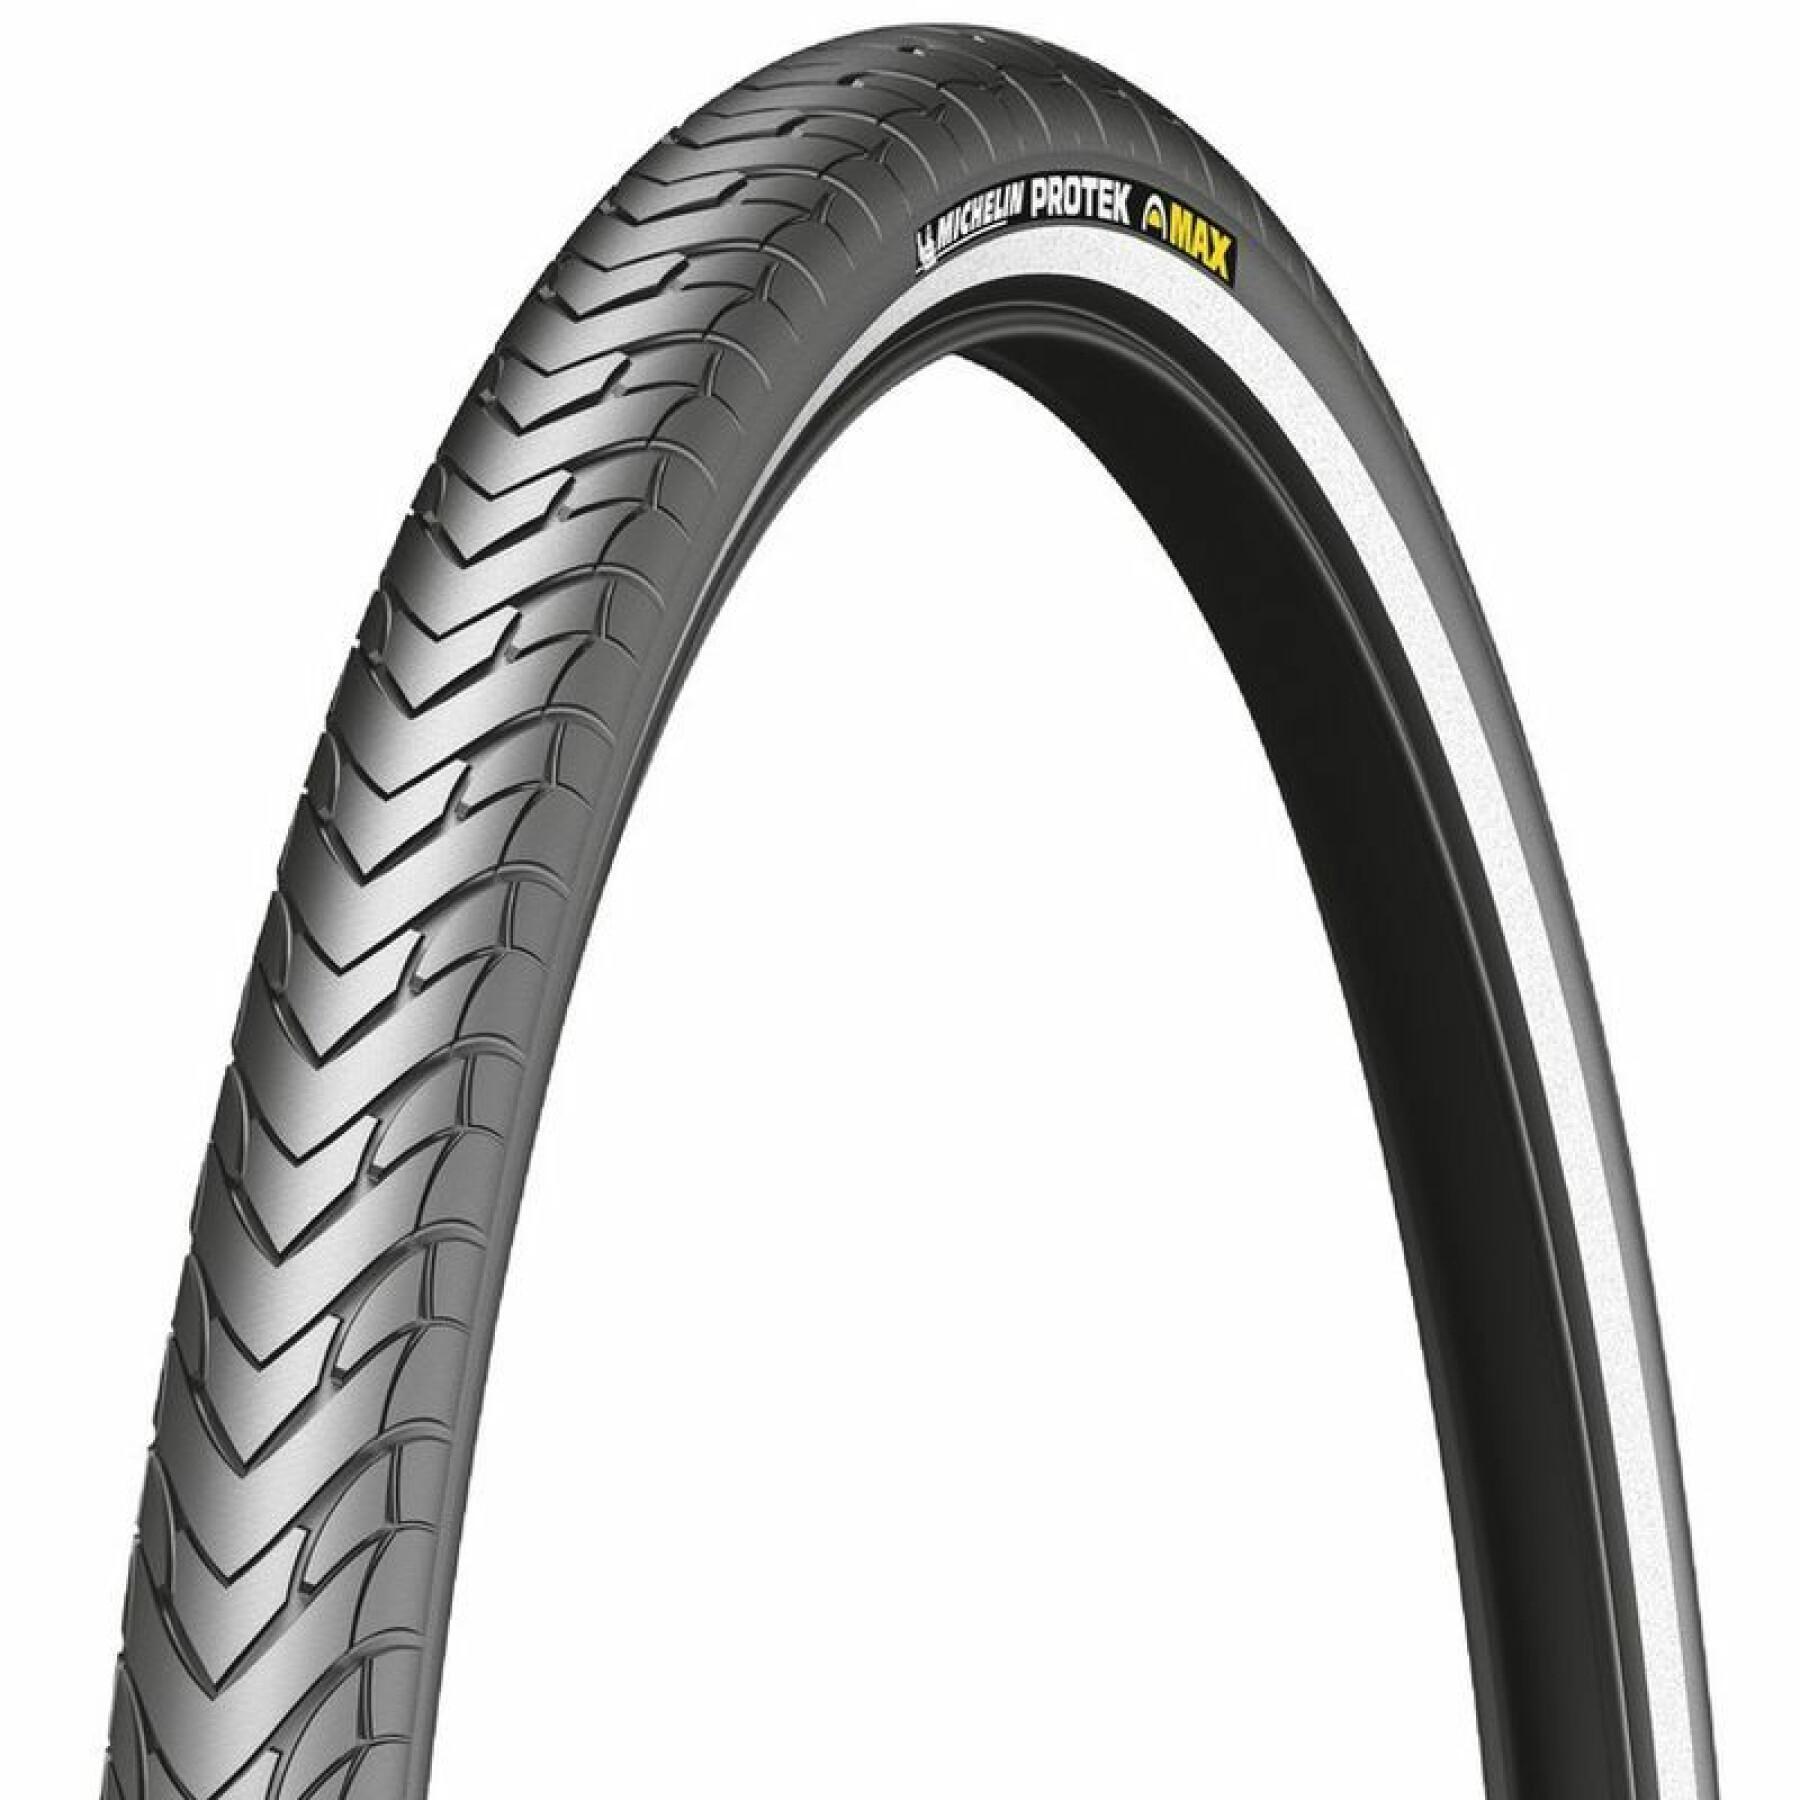 Starrer Reifen mit reflektierender Seitenwand Michelin Protek Max Performance Line 47-559